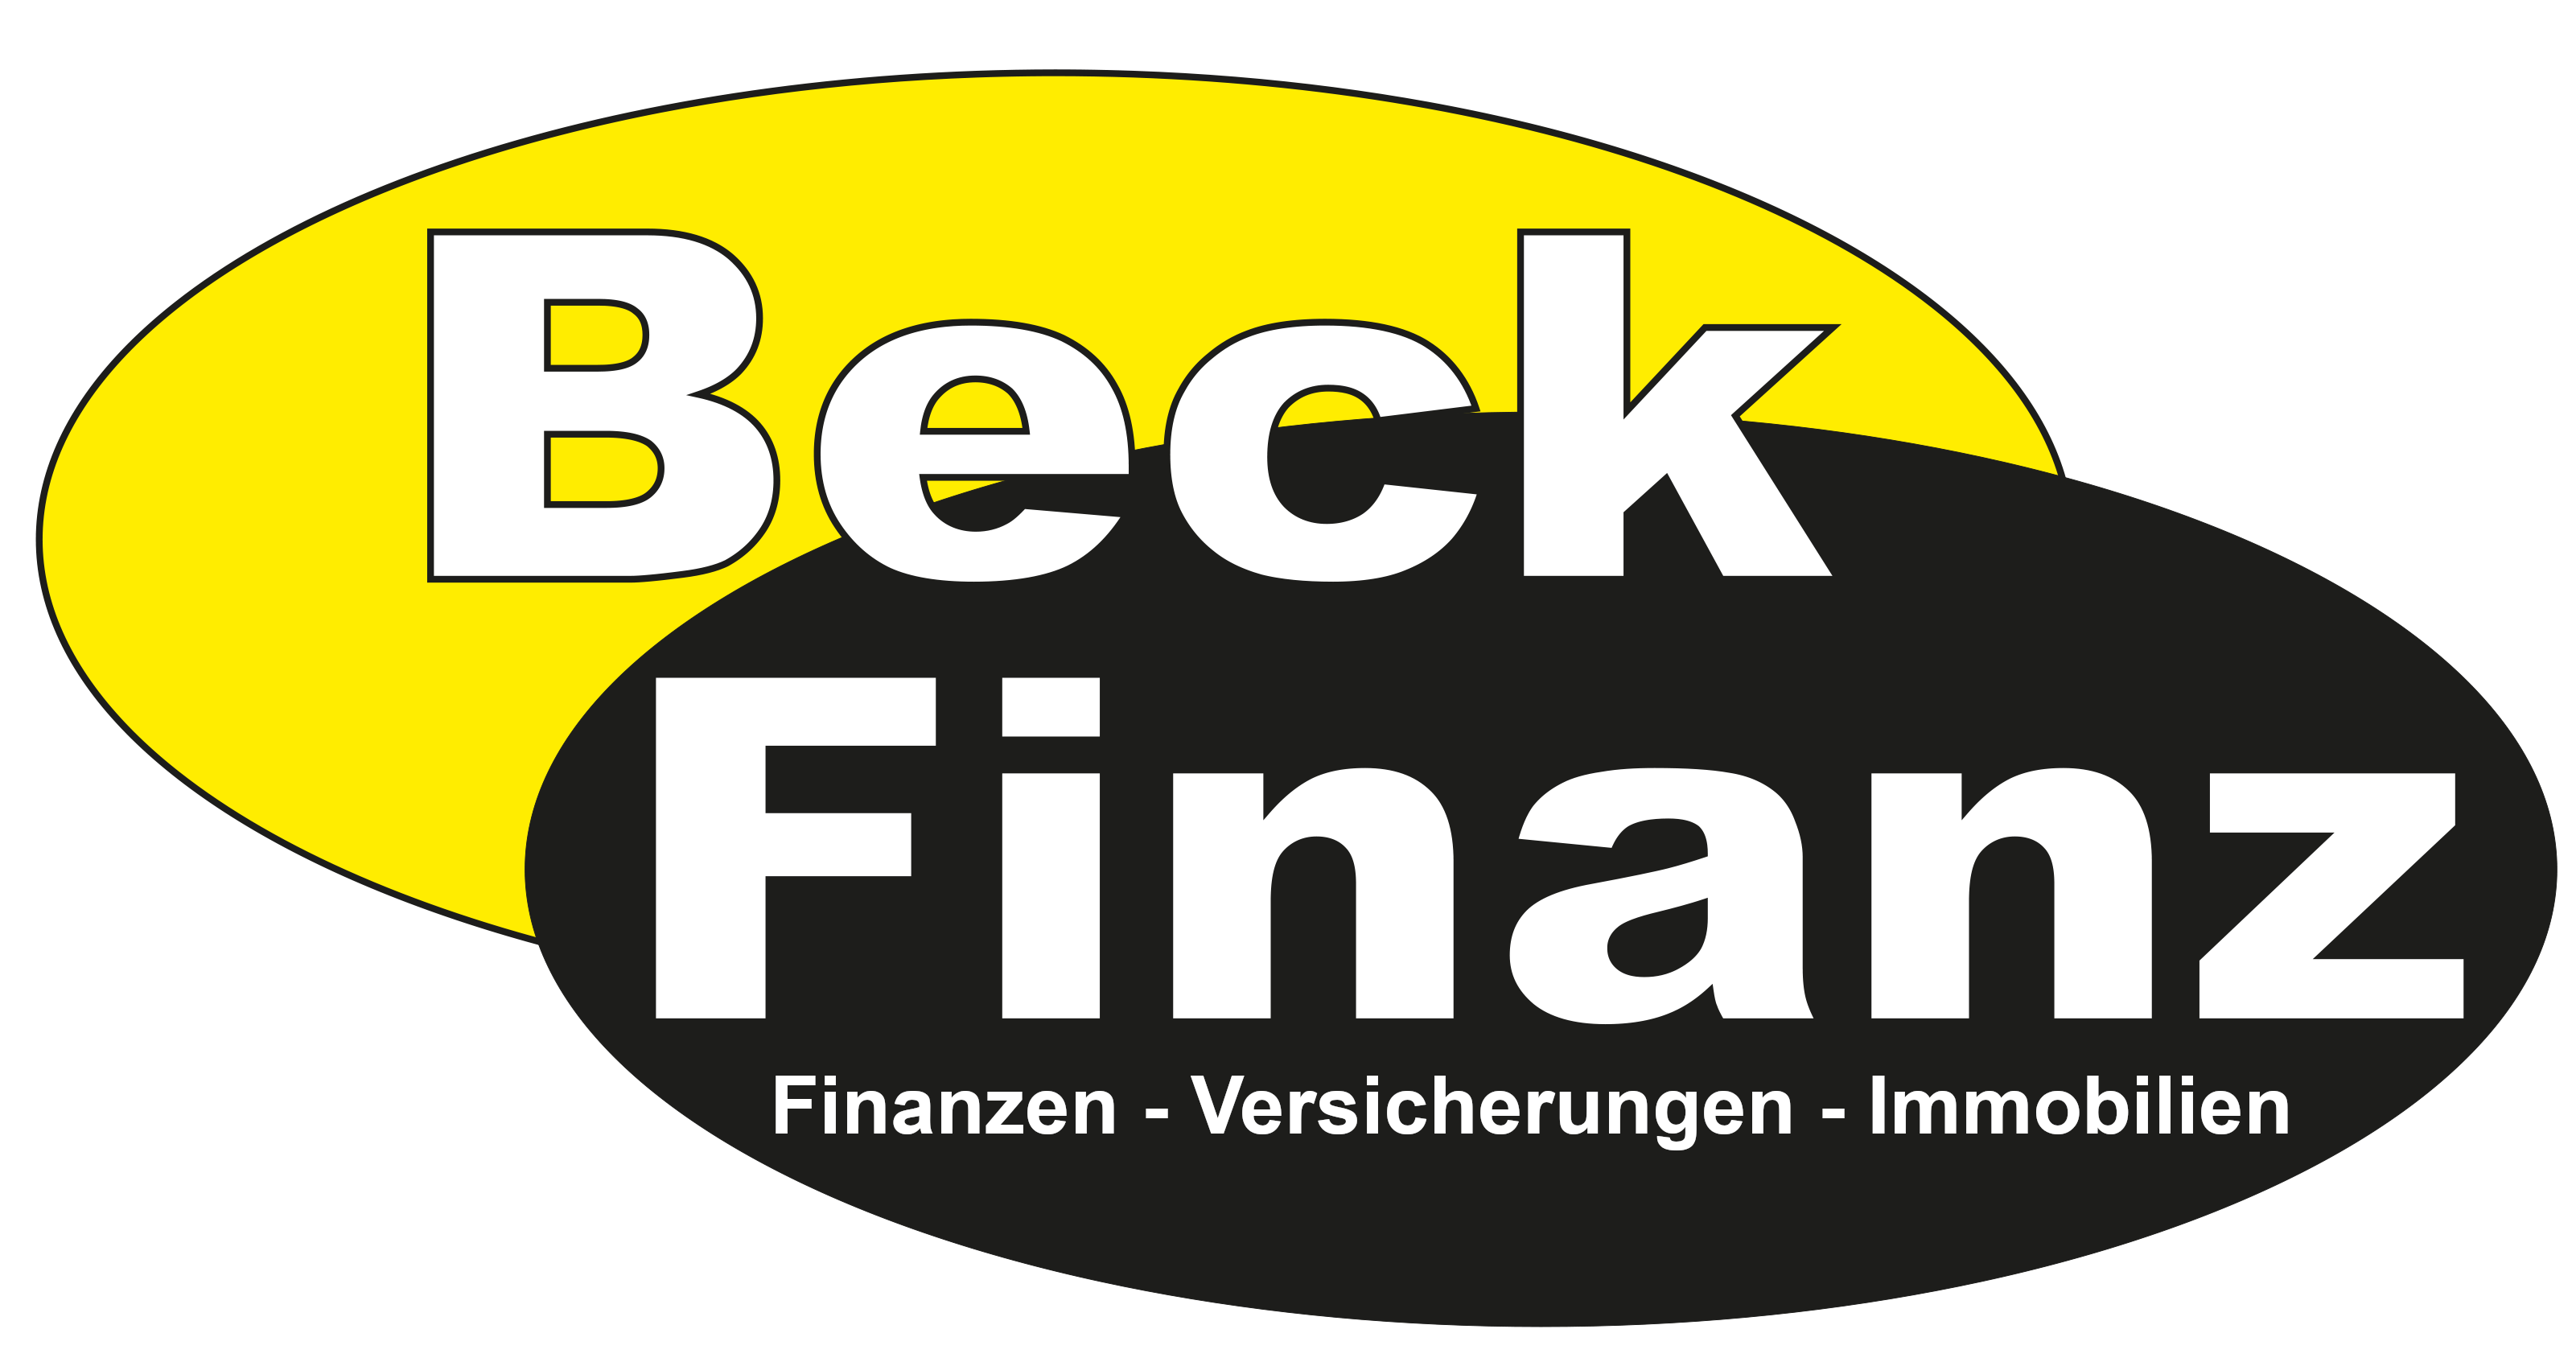 Oliver Beck Ihr Versicherungsmakler